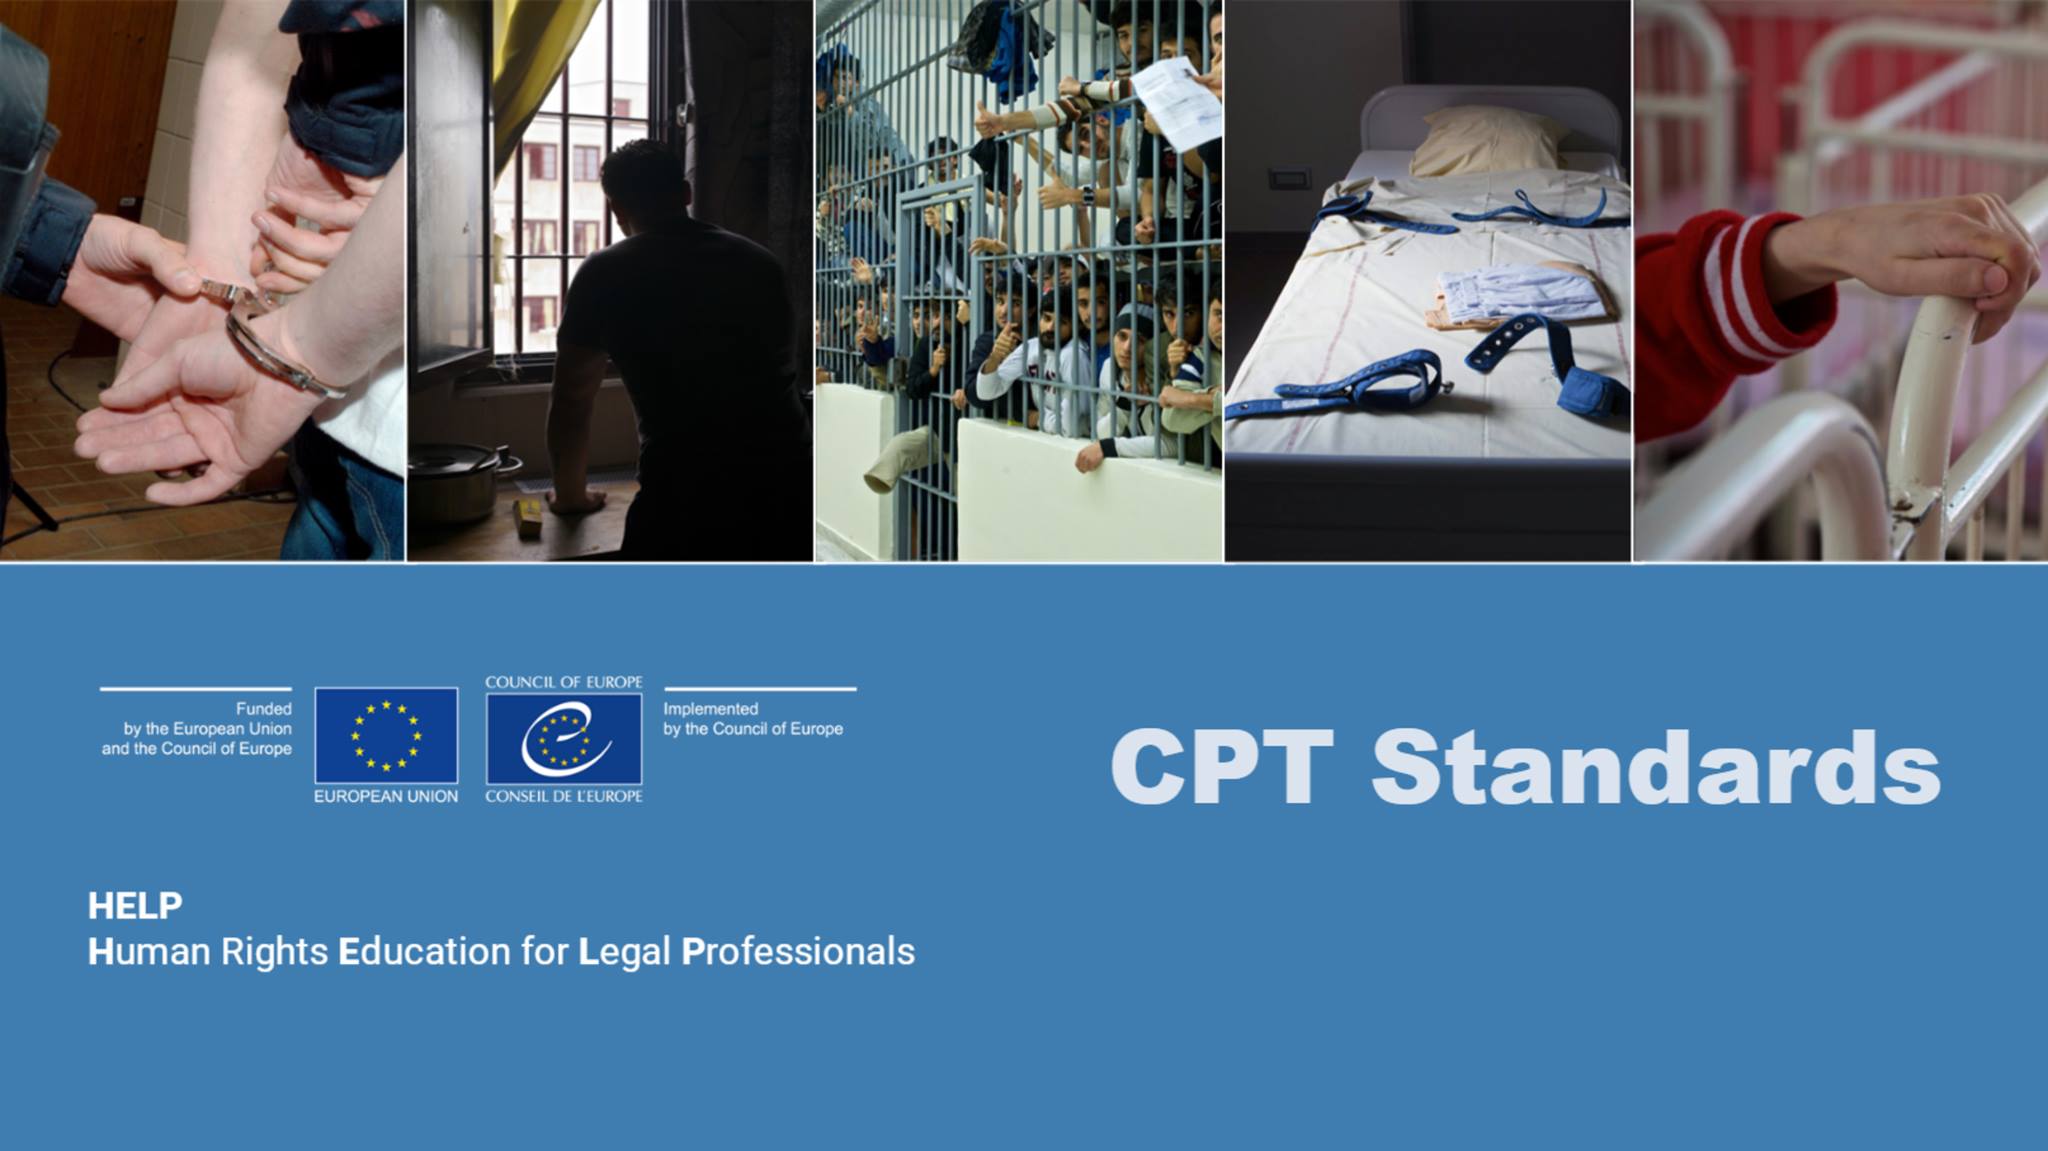 ევროპის საბჭოს HELP ონლაინ კურსის პრეზენტაცია - წამების აღკვეთის კომიტეტის (CPT) სტანდარტების შესახებ